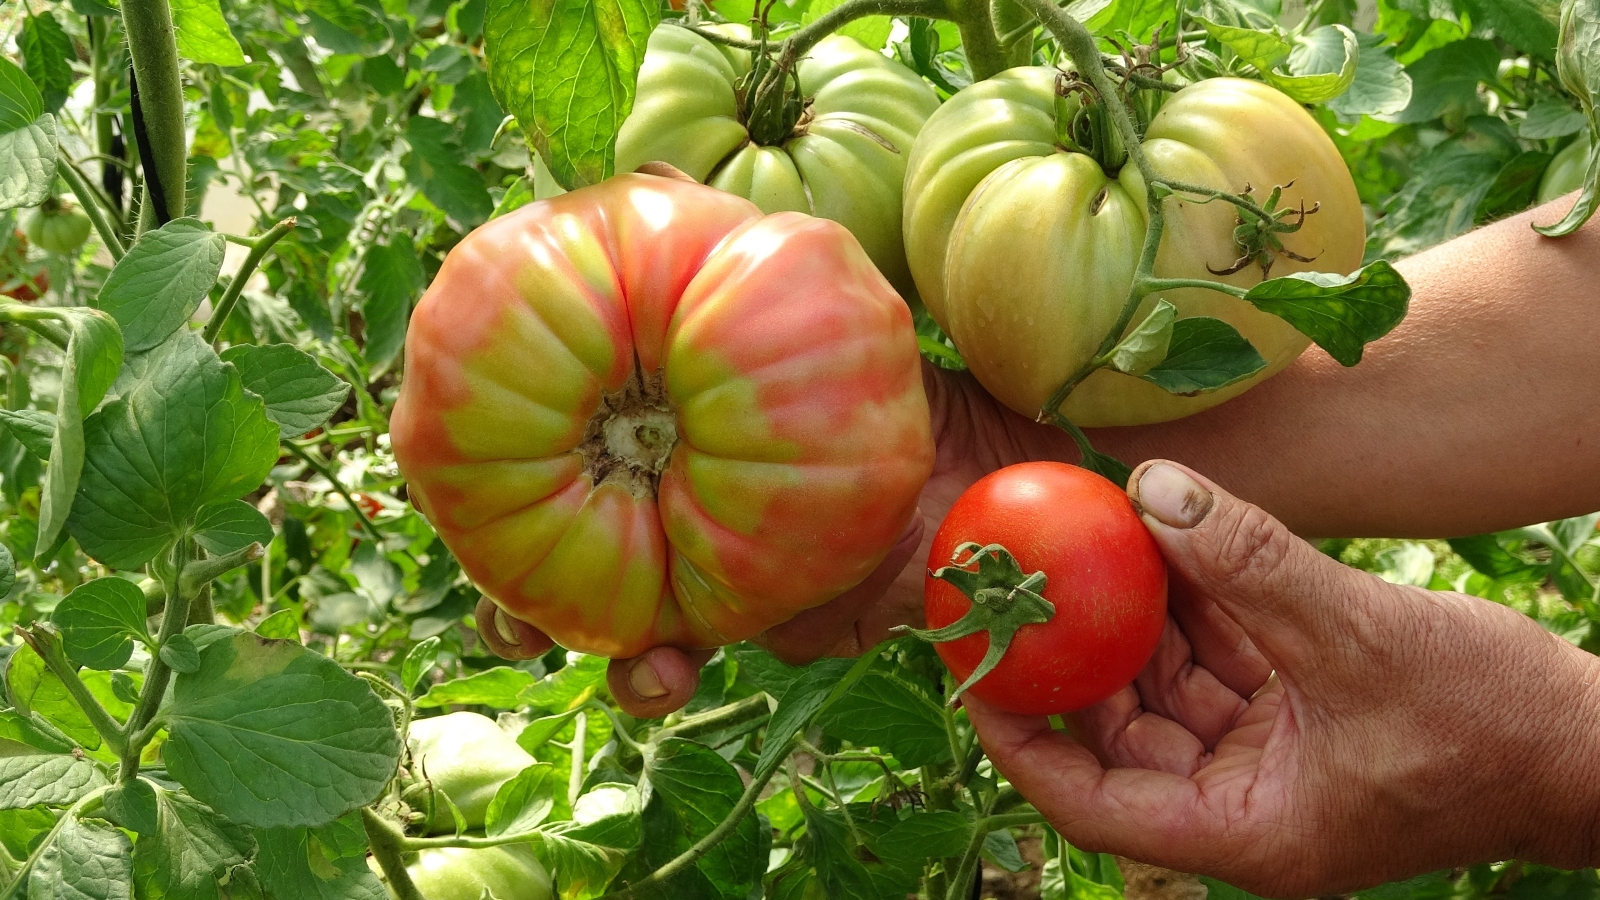 Bu domatesin tanesi 1 kilo geliyor, rengi ile dikkat çekiyor